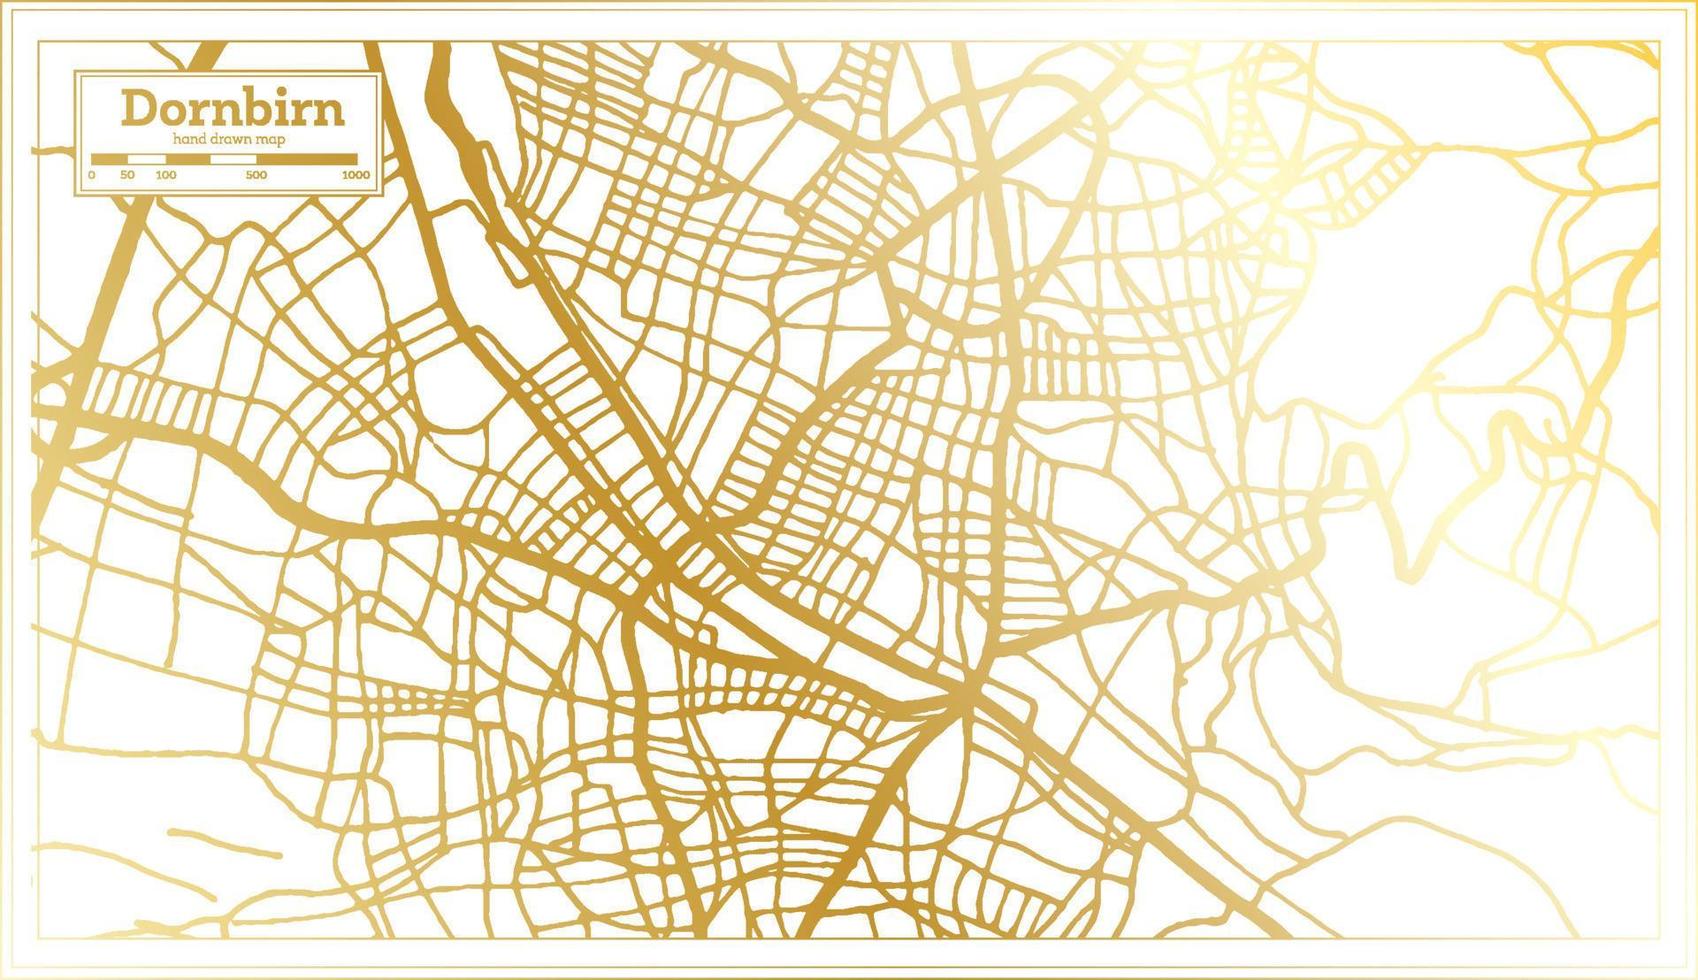 mapa de la ciudad de dornbirn austria en estilo retro en color dorado. esquema del mapa. vector